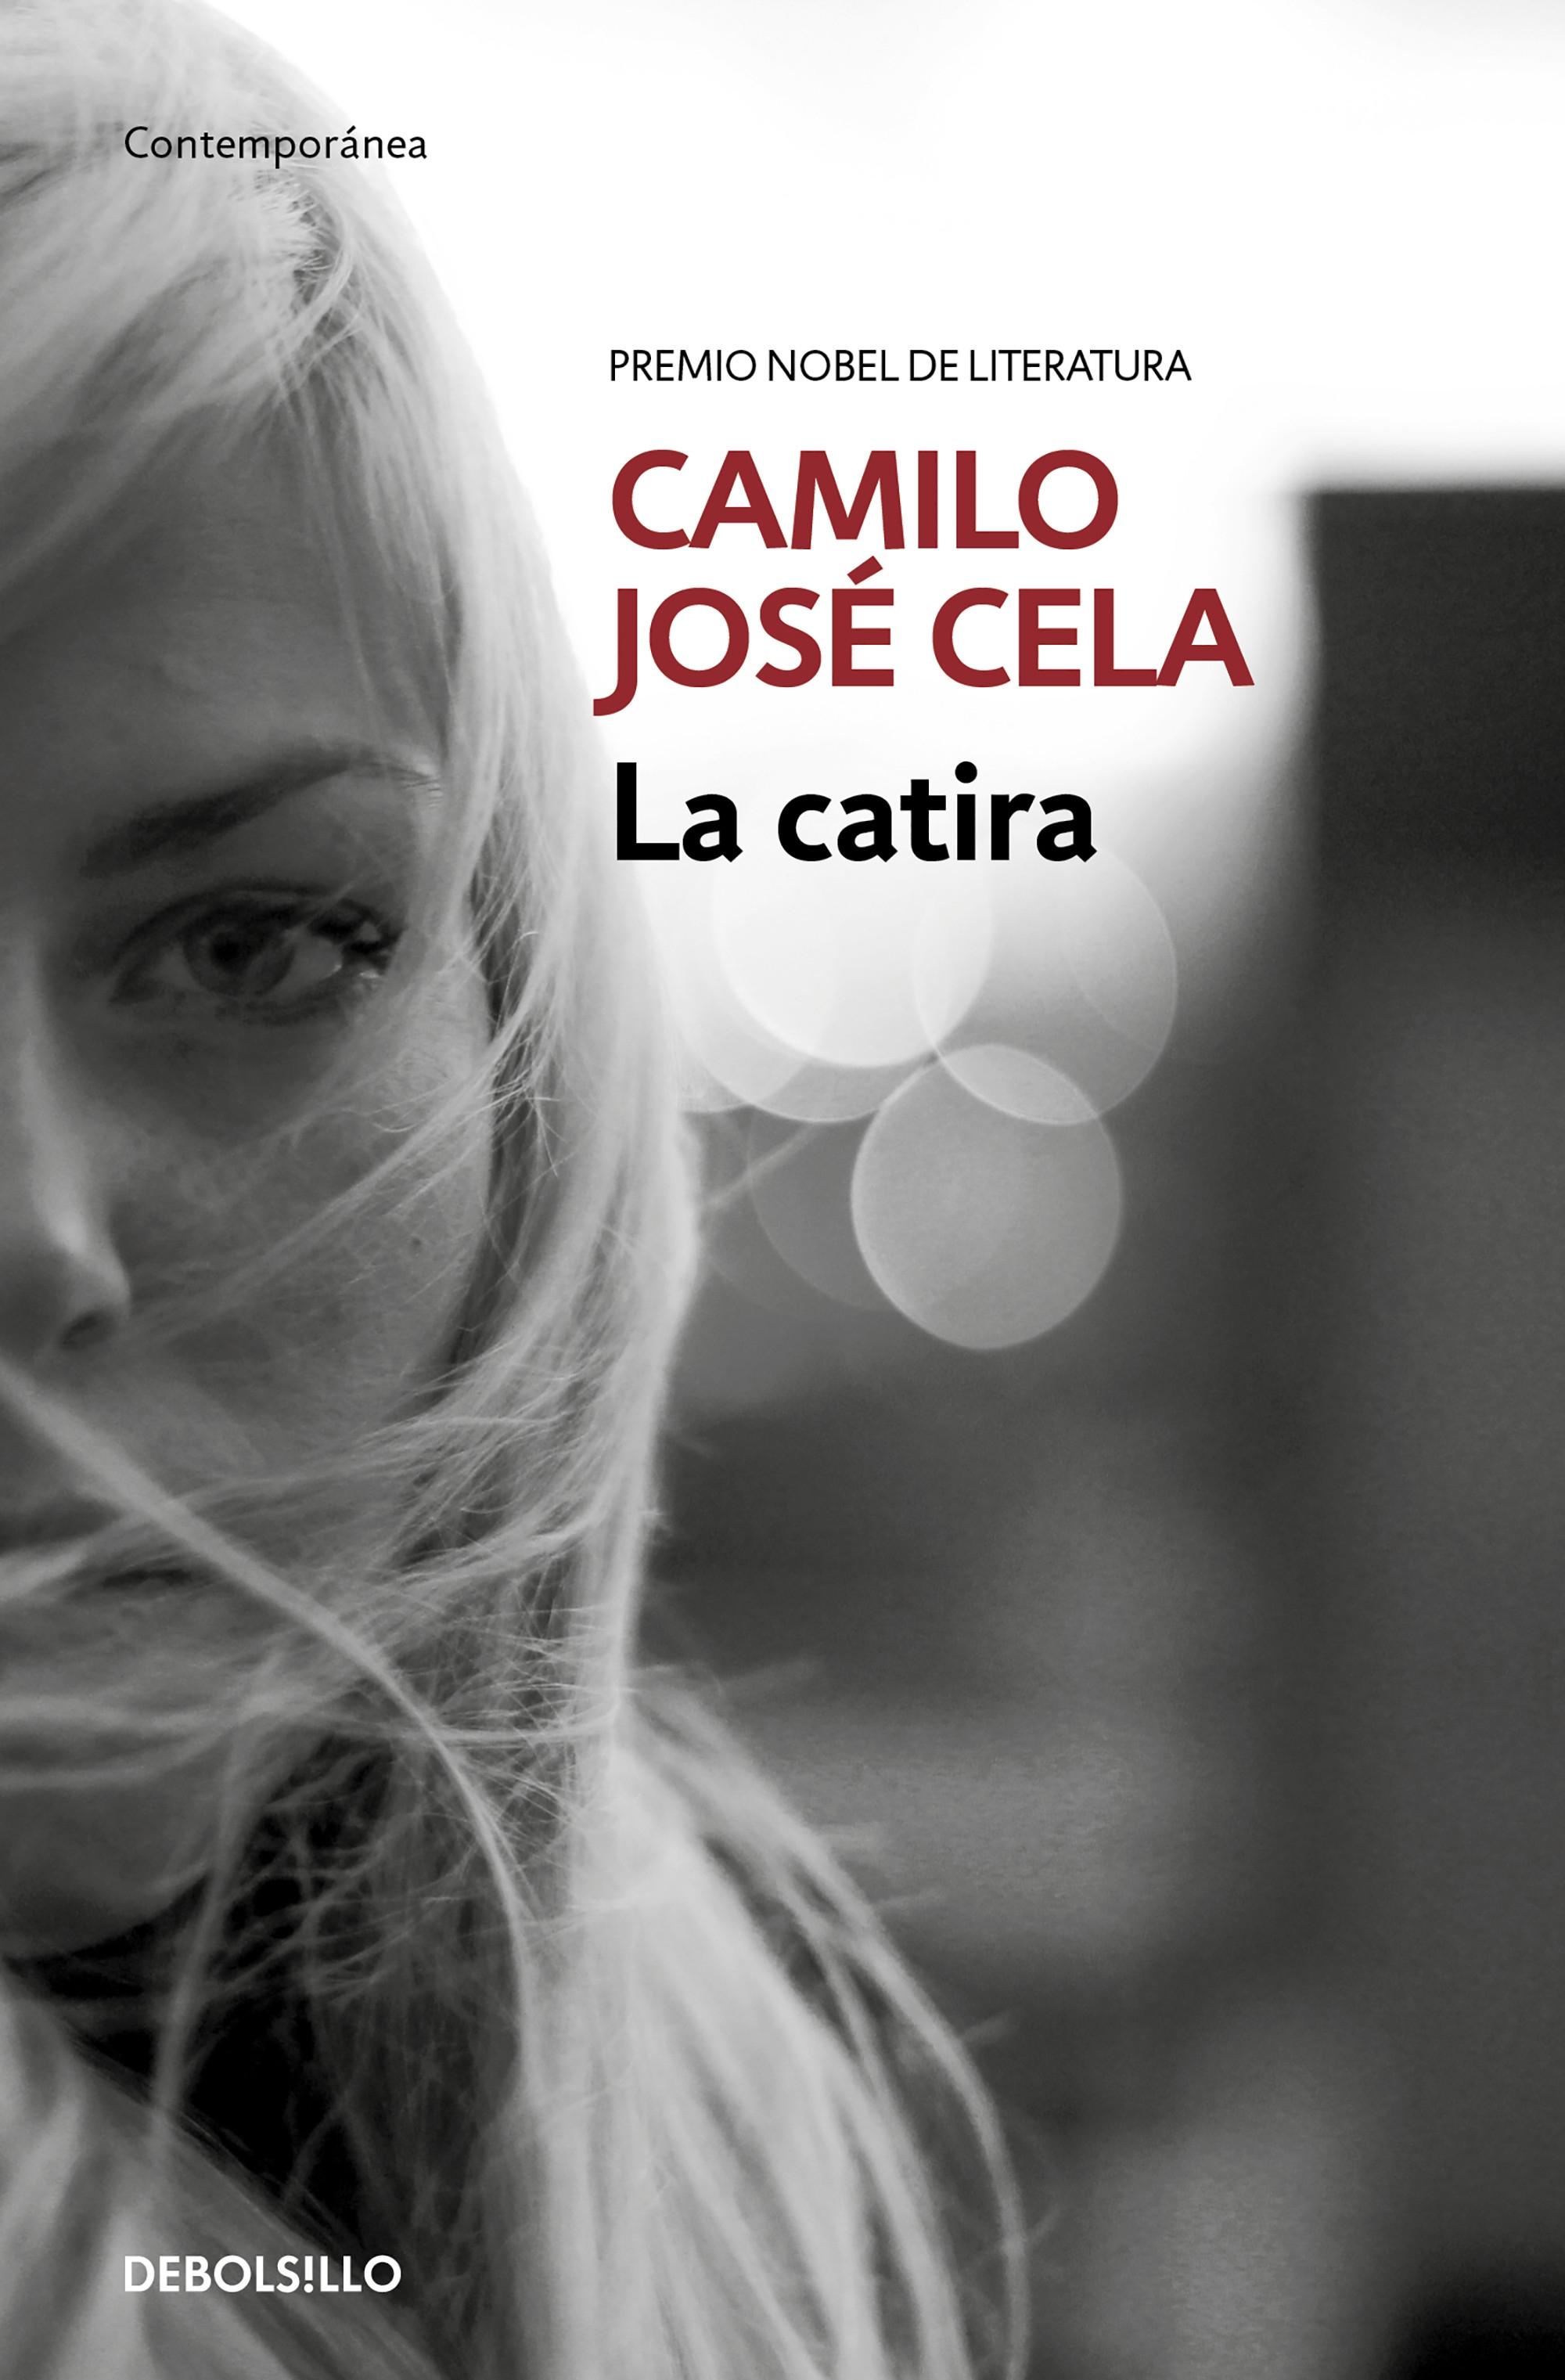 Zenda recomienda: La catira, de Camilo José Cela